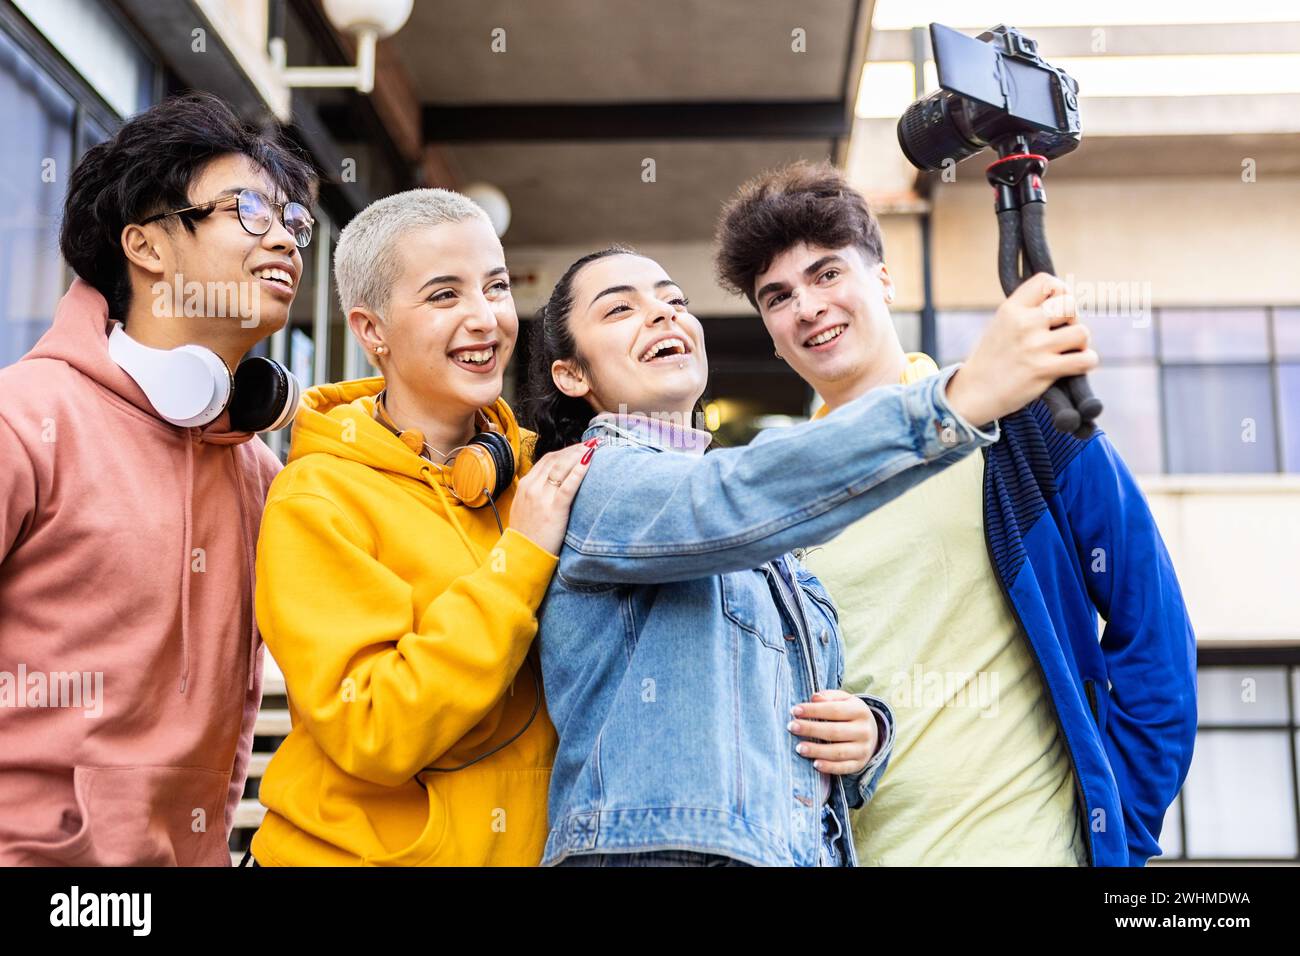 Junge Studentenfreunde, die Spaß beim Aufnehmen von Social-Media-Videoinhalten haben Stockfoto